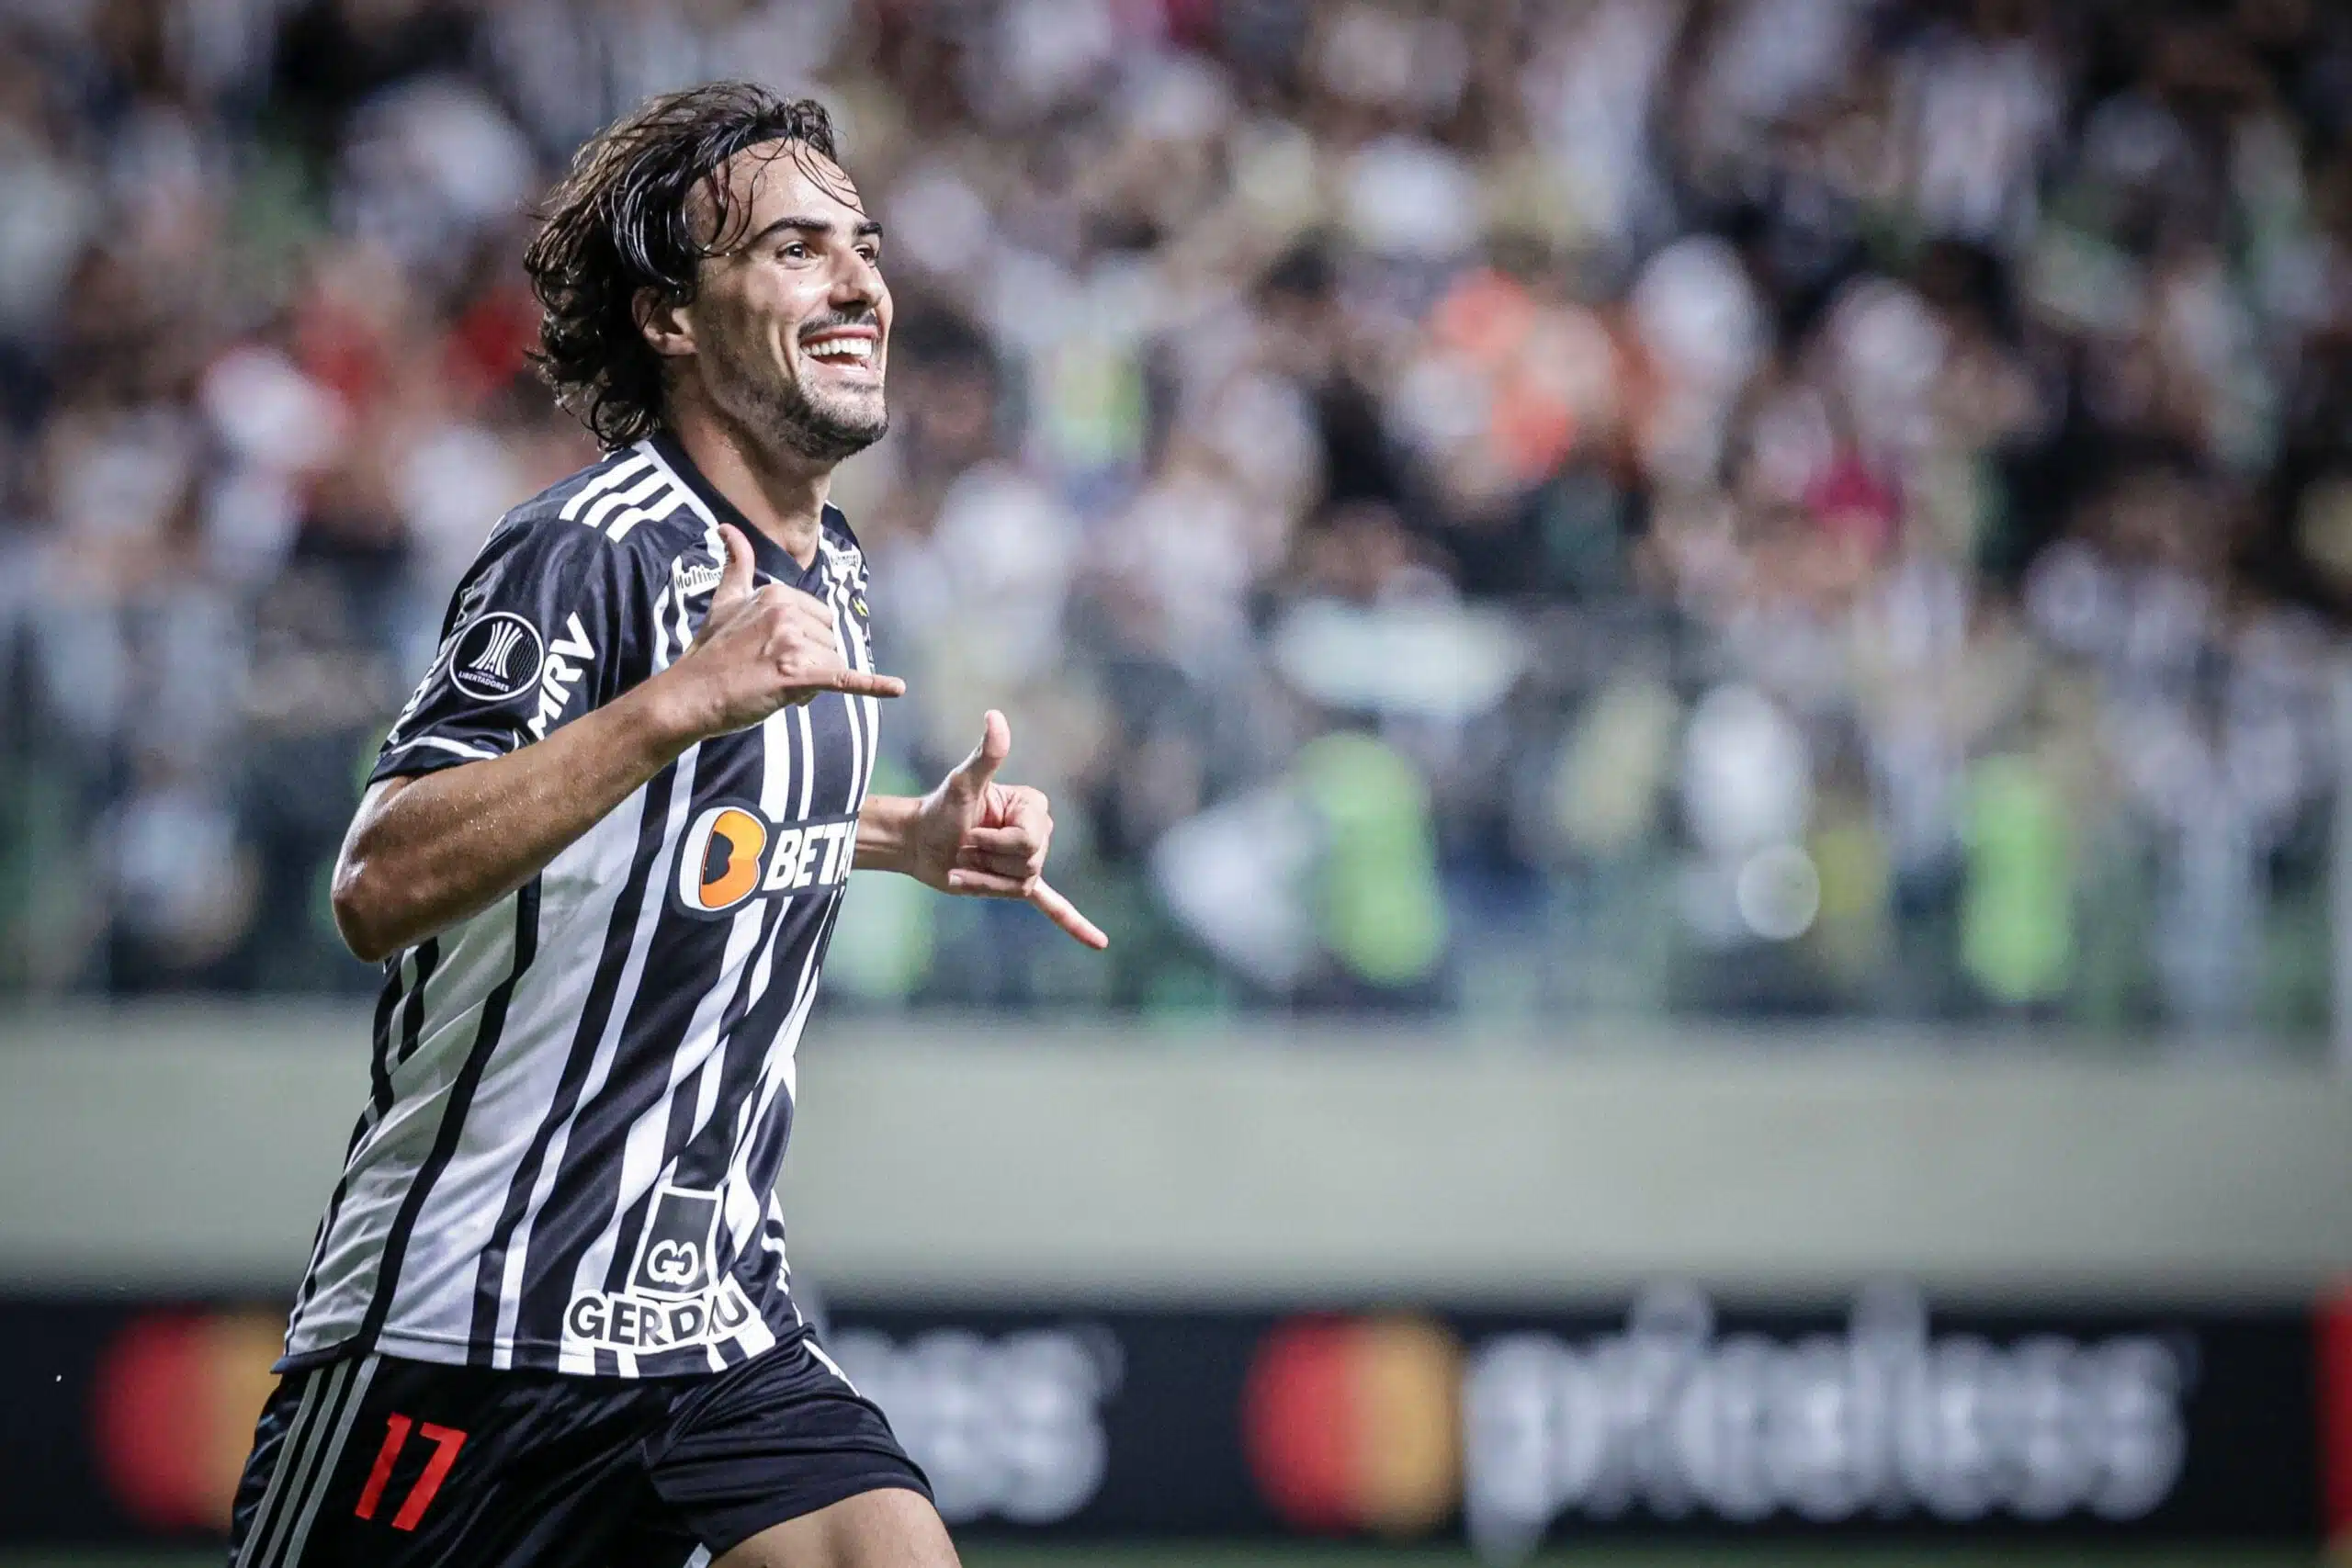 Igor Gomes marca duas vezes em importante vitória do Atlético-MG na Libertadores; veja os gols